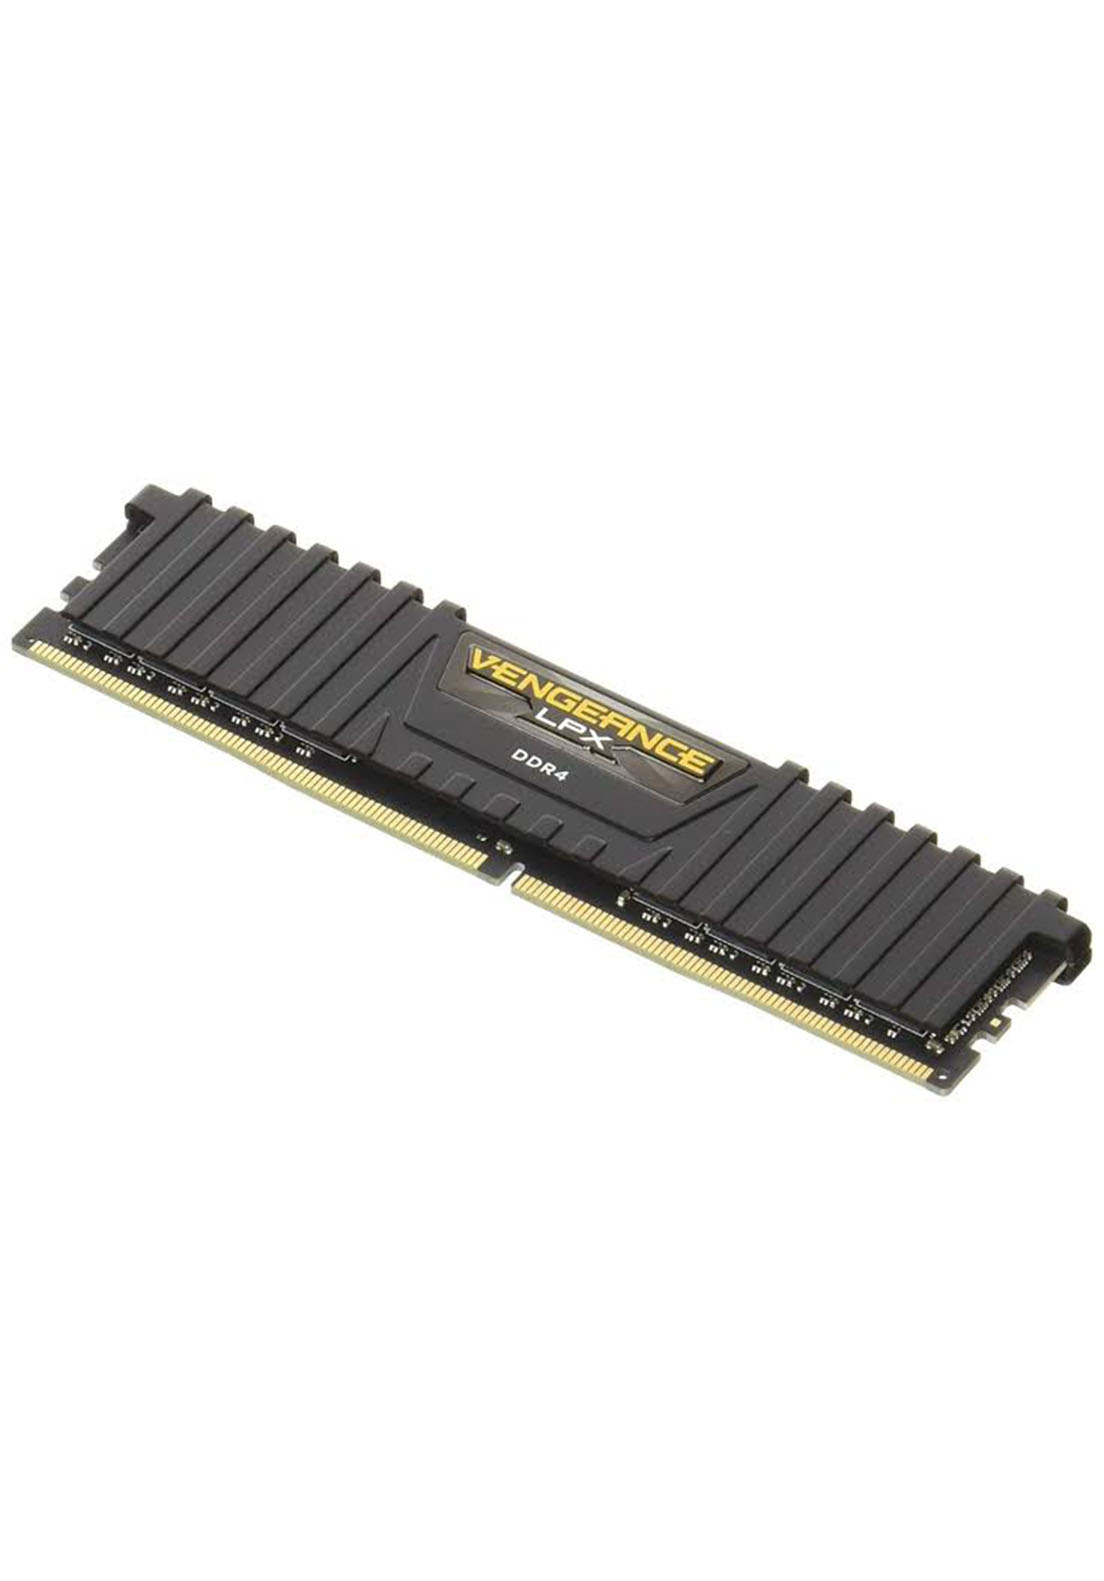 Memoria RAM DDR4 Corsair Vengeance LPX 8Gb 3200Mhz